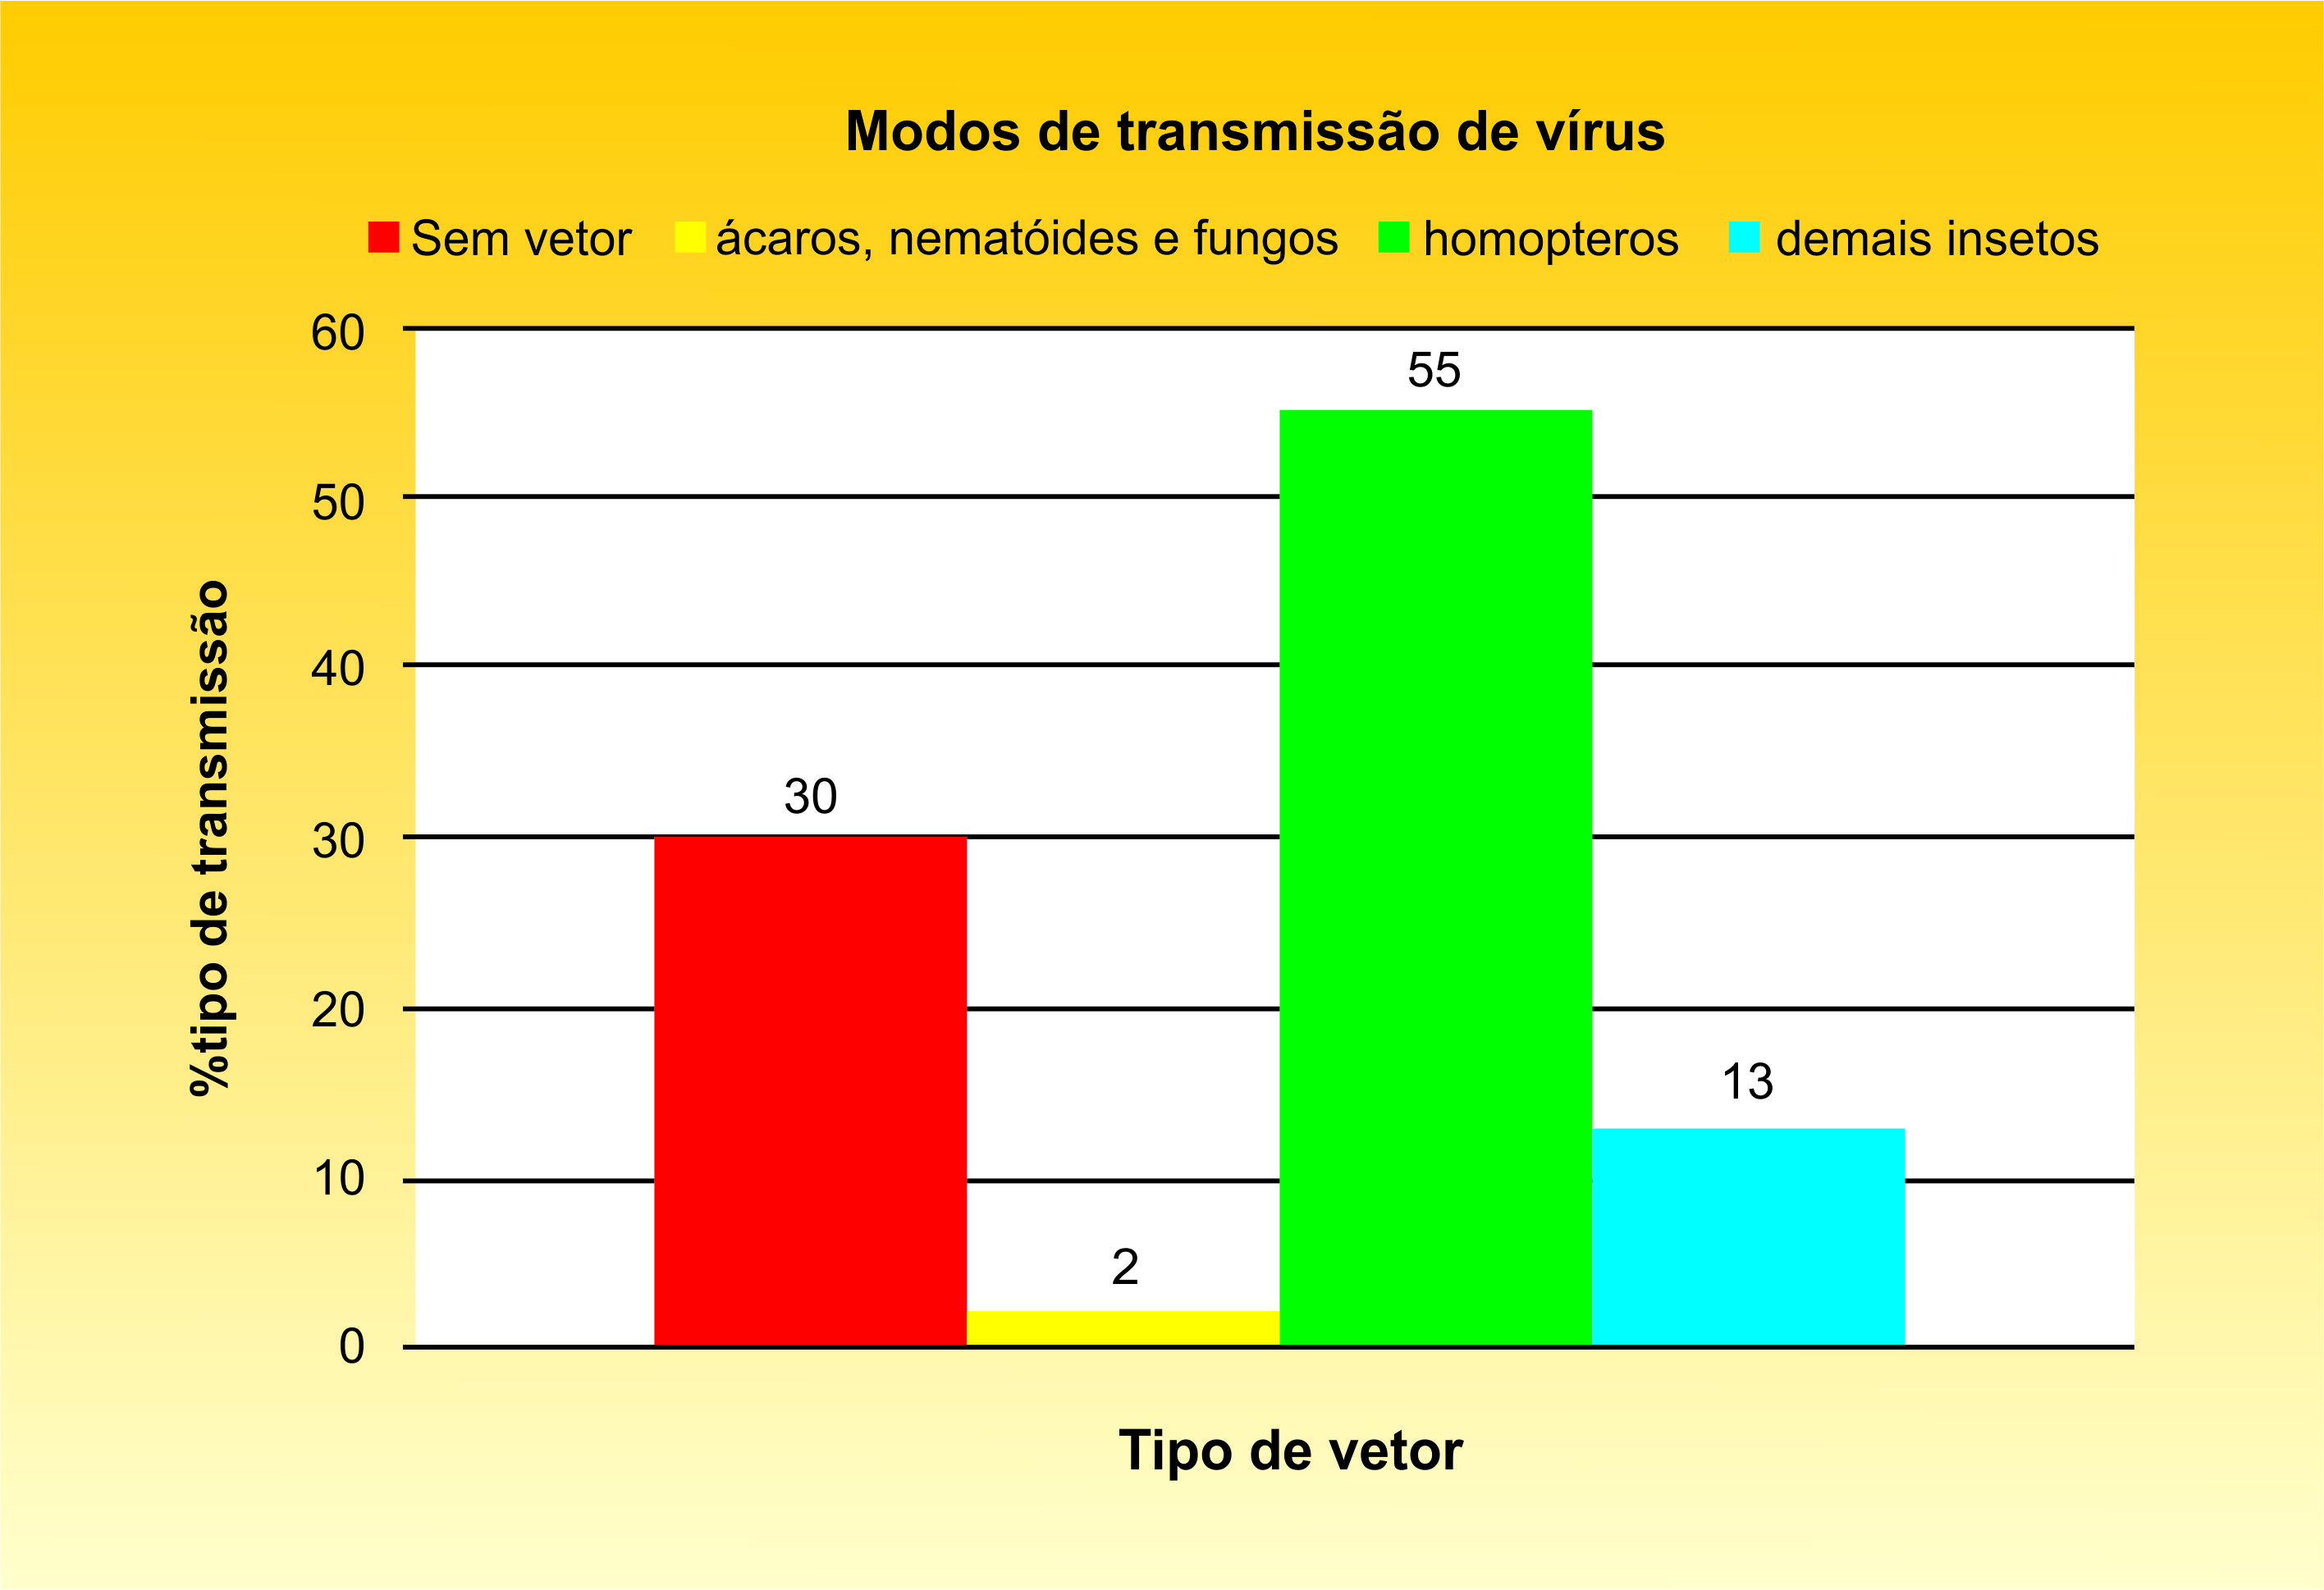 Figura 1 - Modos de transmissão de vírus vegetais e porcentagem de vírus por grupos de insetos.